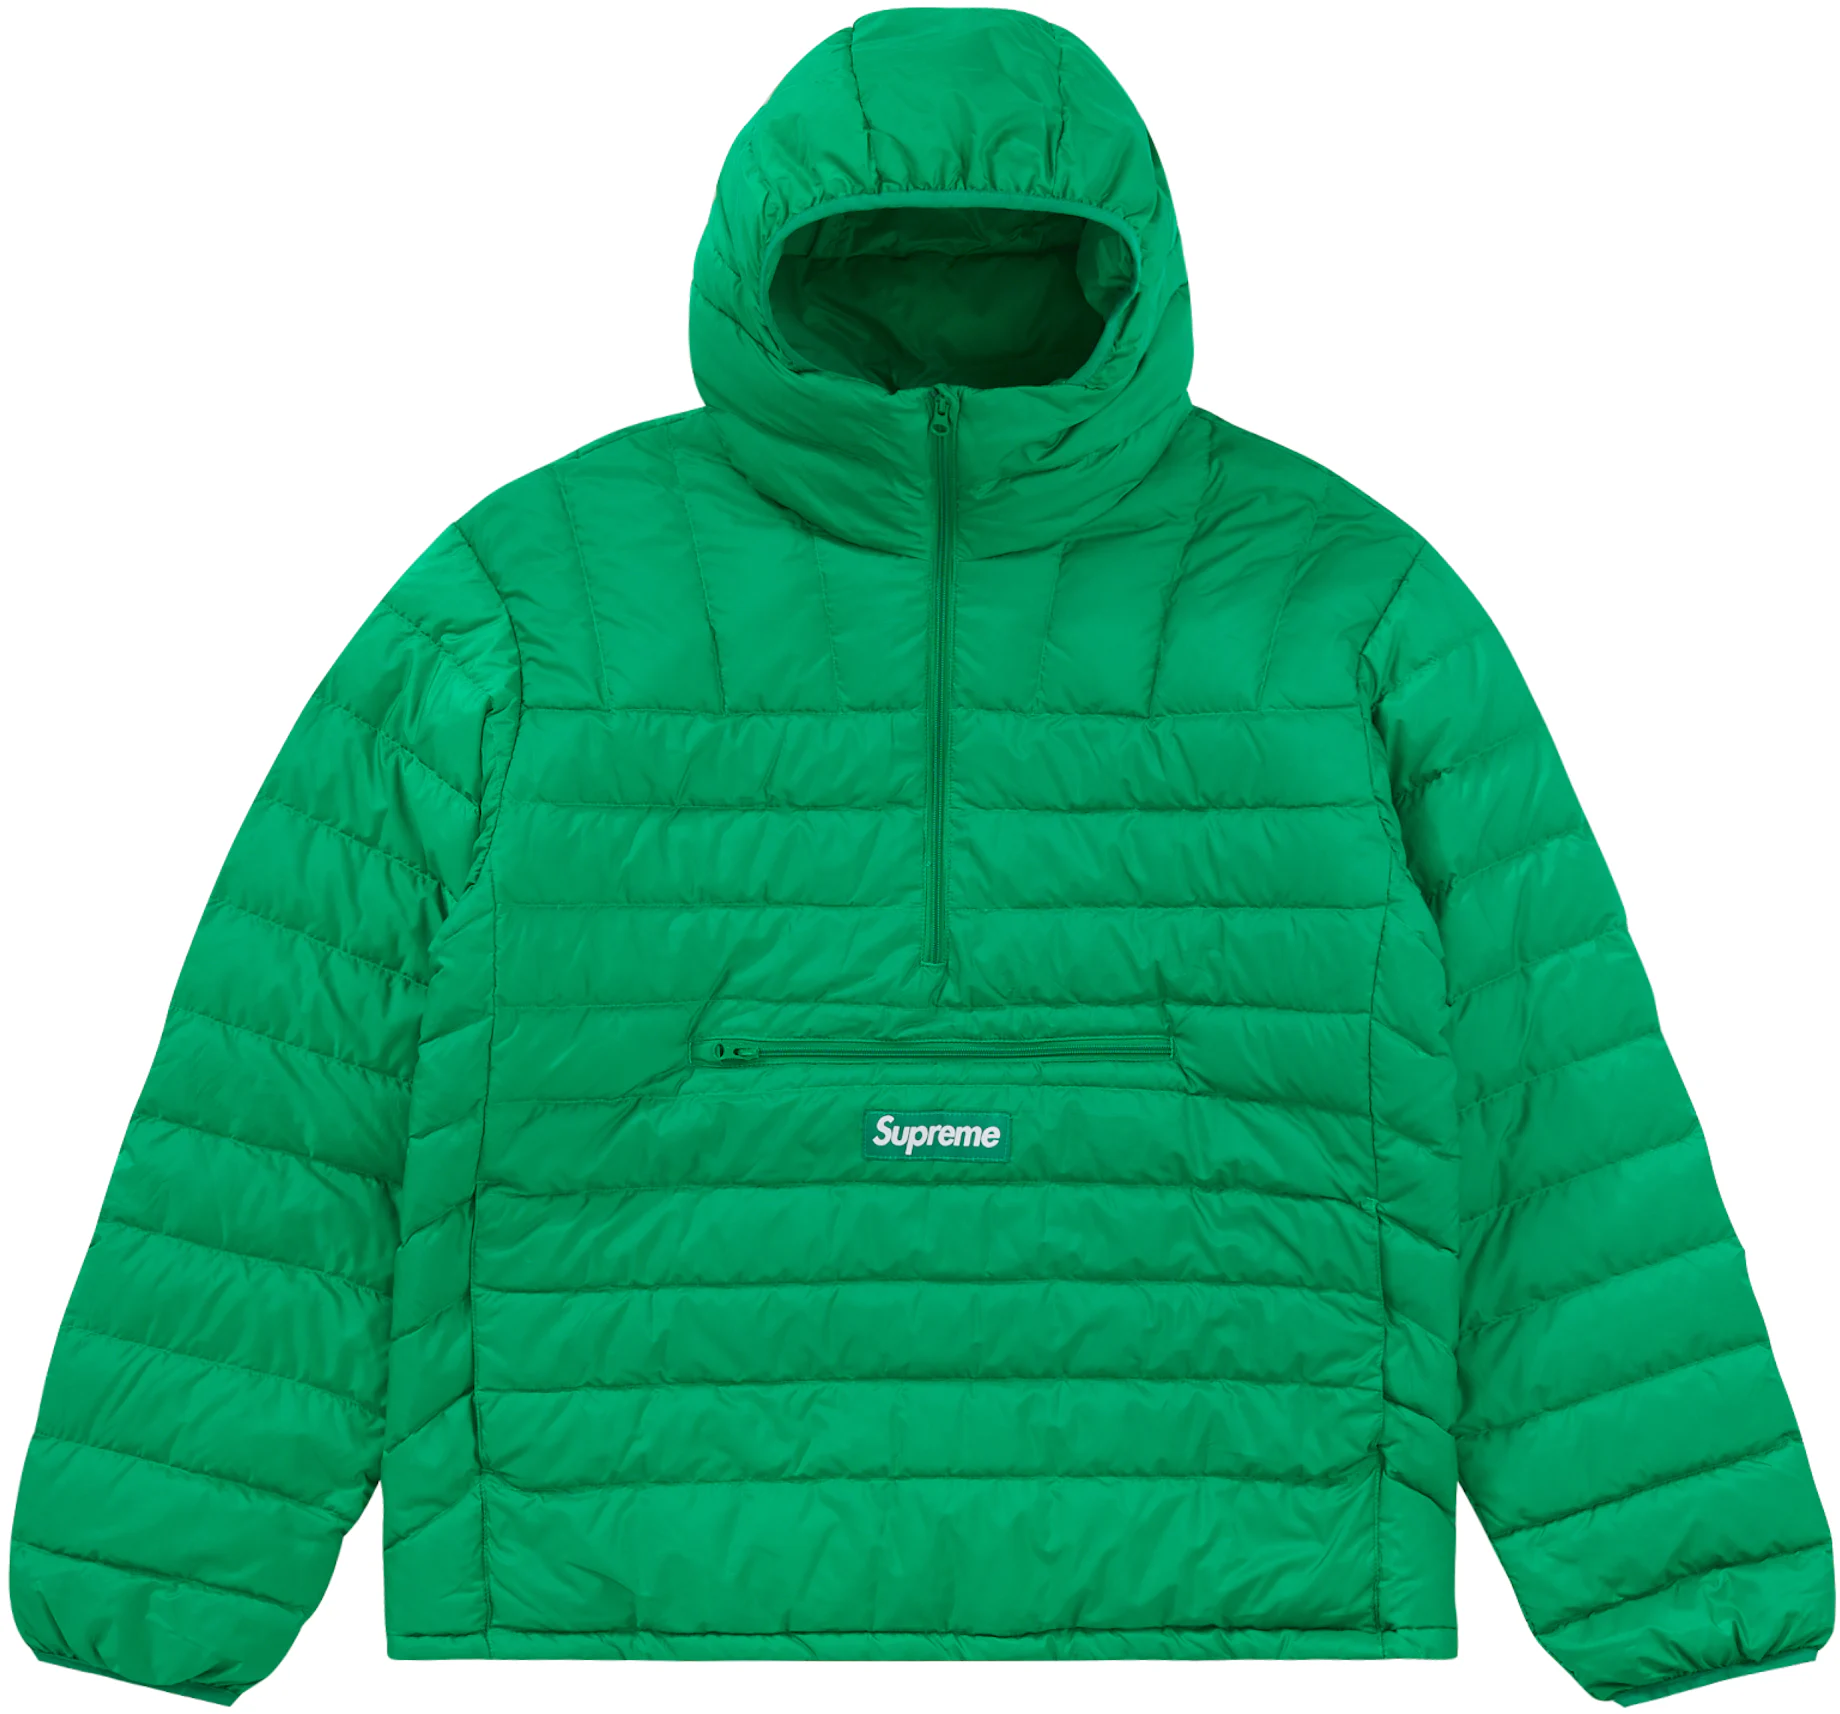 DEDICATED - Half-zip Sweatshirt Storuman in Green